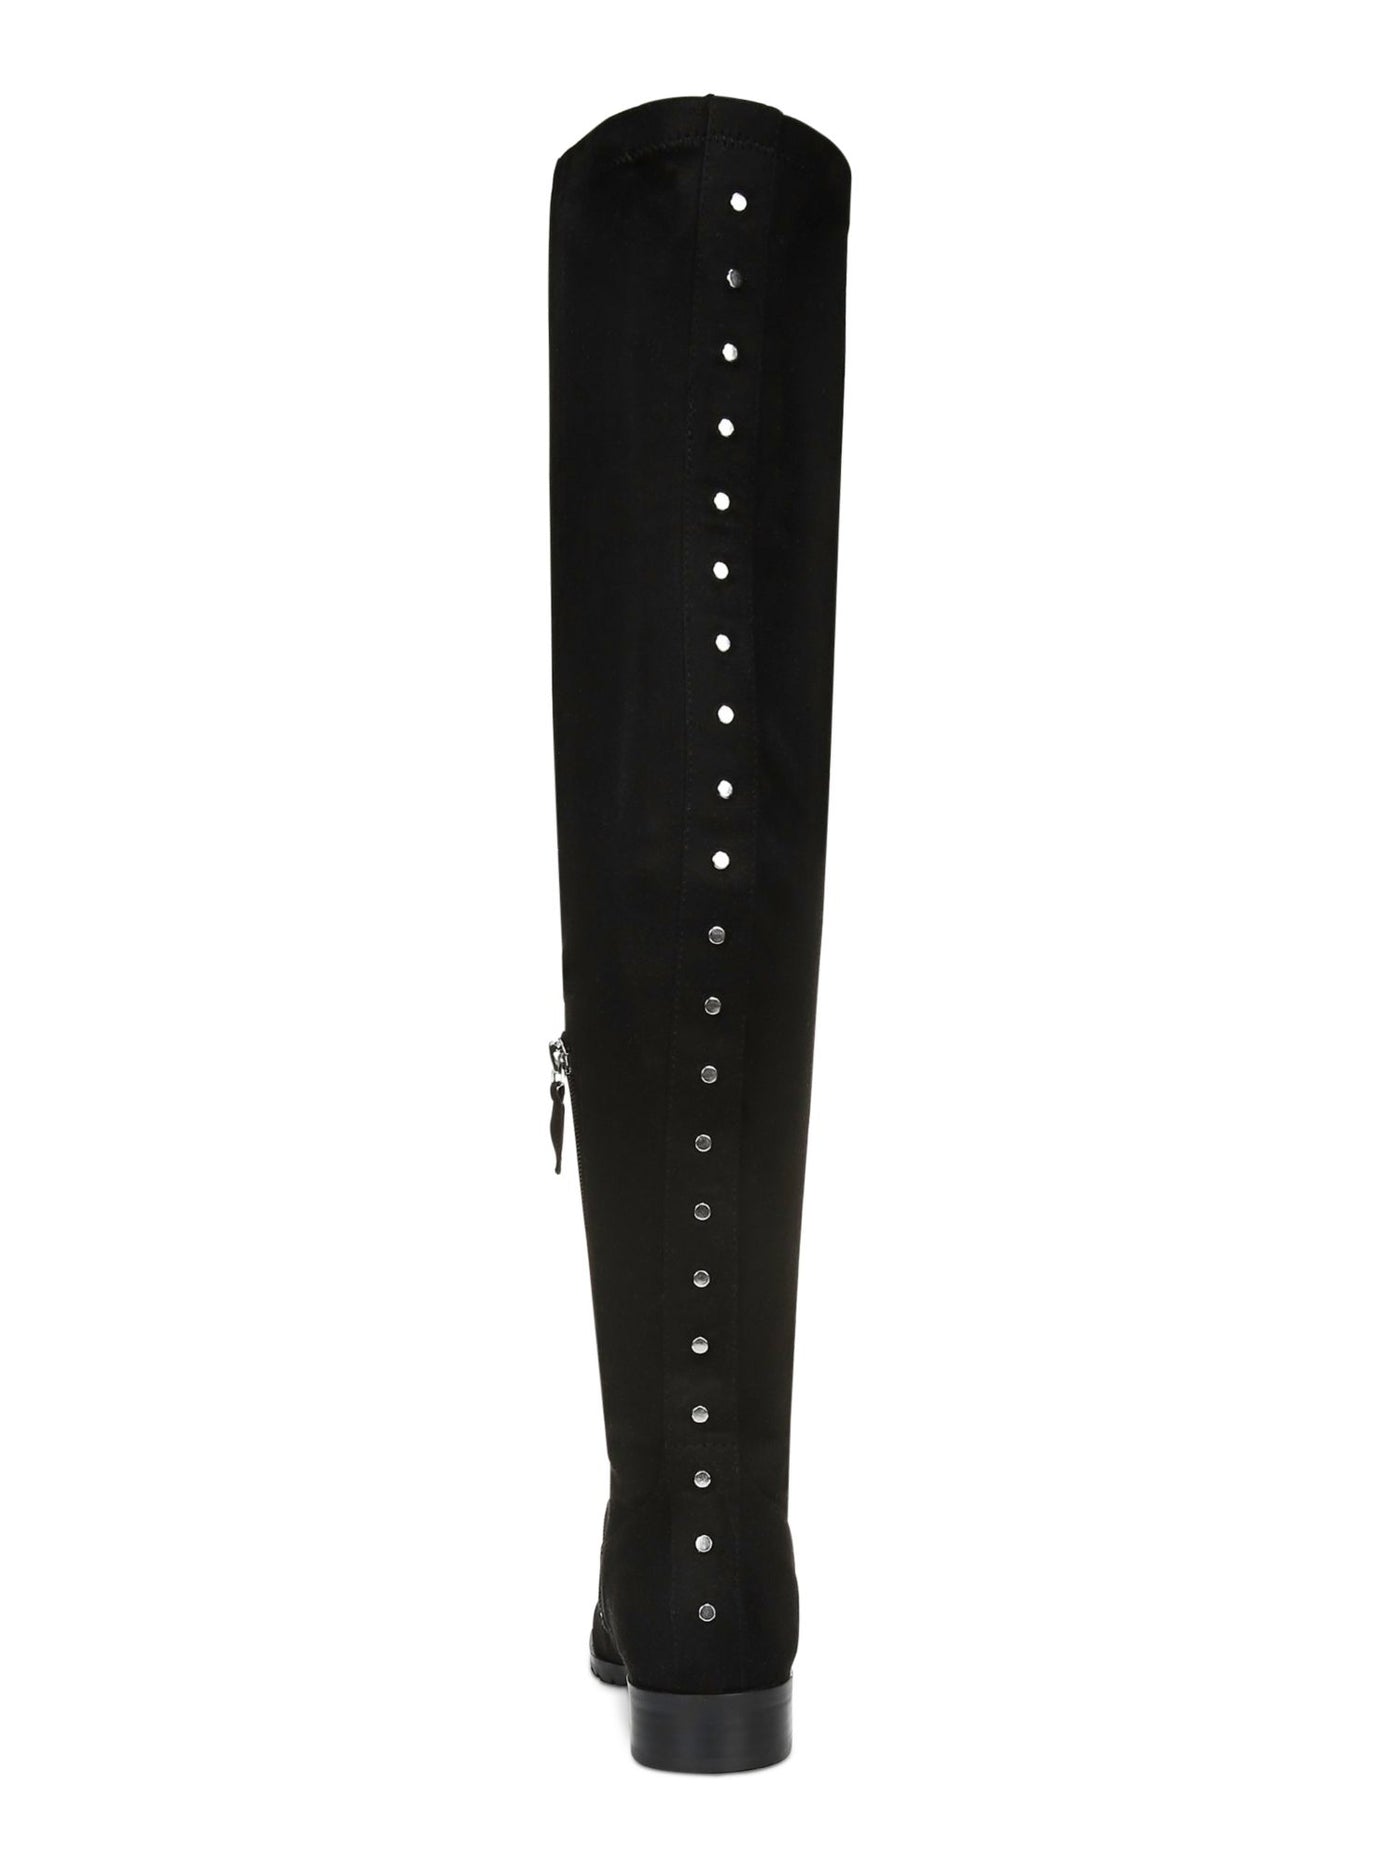 BAR III Womens Black Lug Sole Studded Taimi Round Toe Dress Boots Shoes 5 M